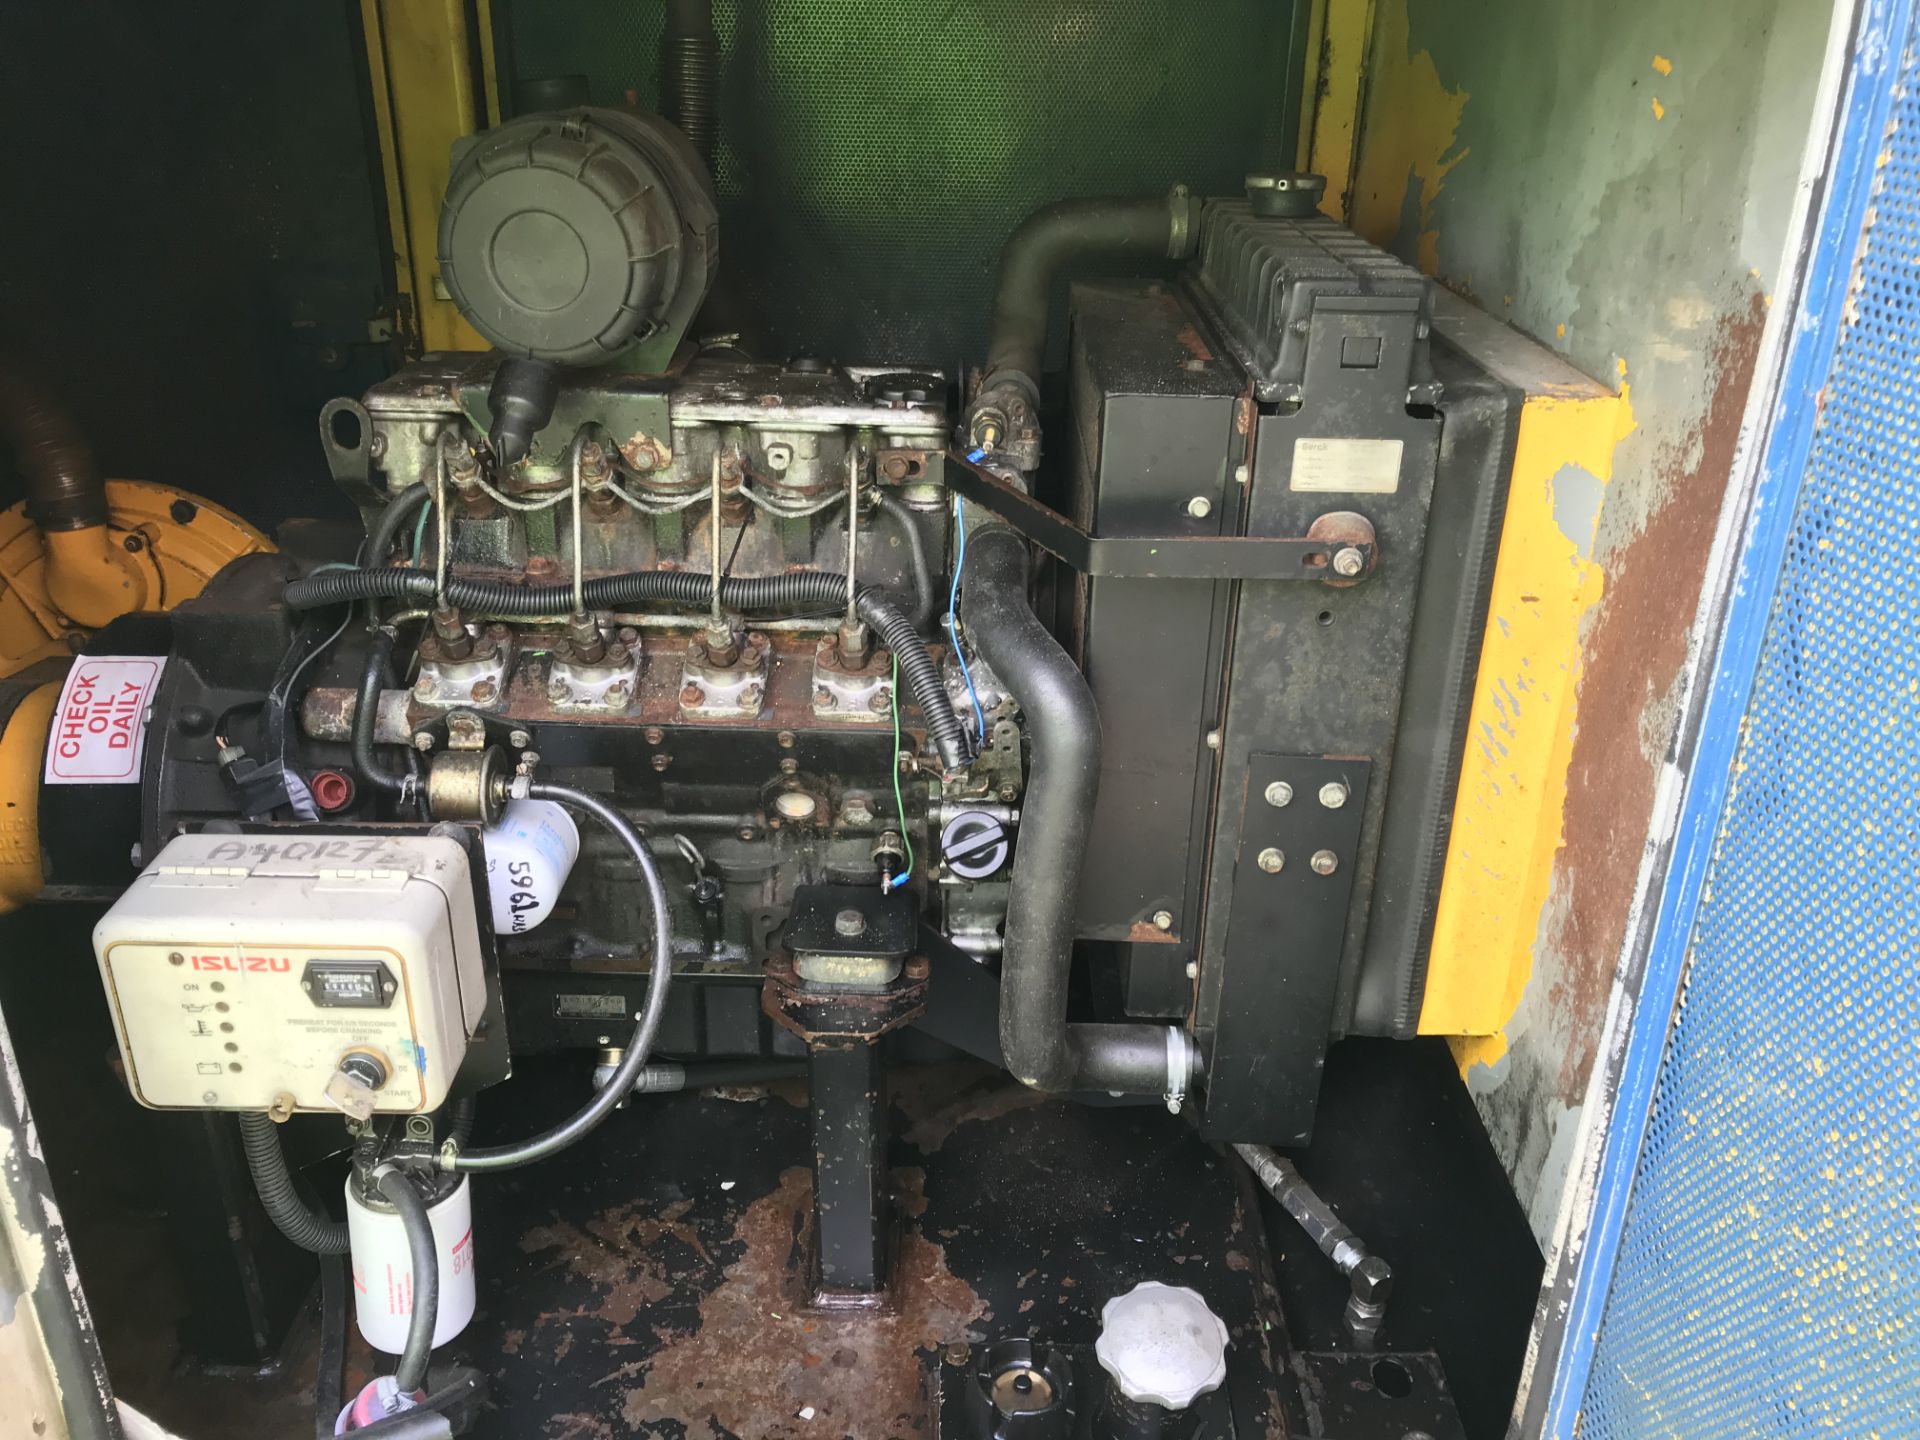 Selwood S100 4"" Solids Handling Diesel Pump | Ref: A083 - Image 4 of 13